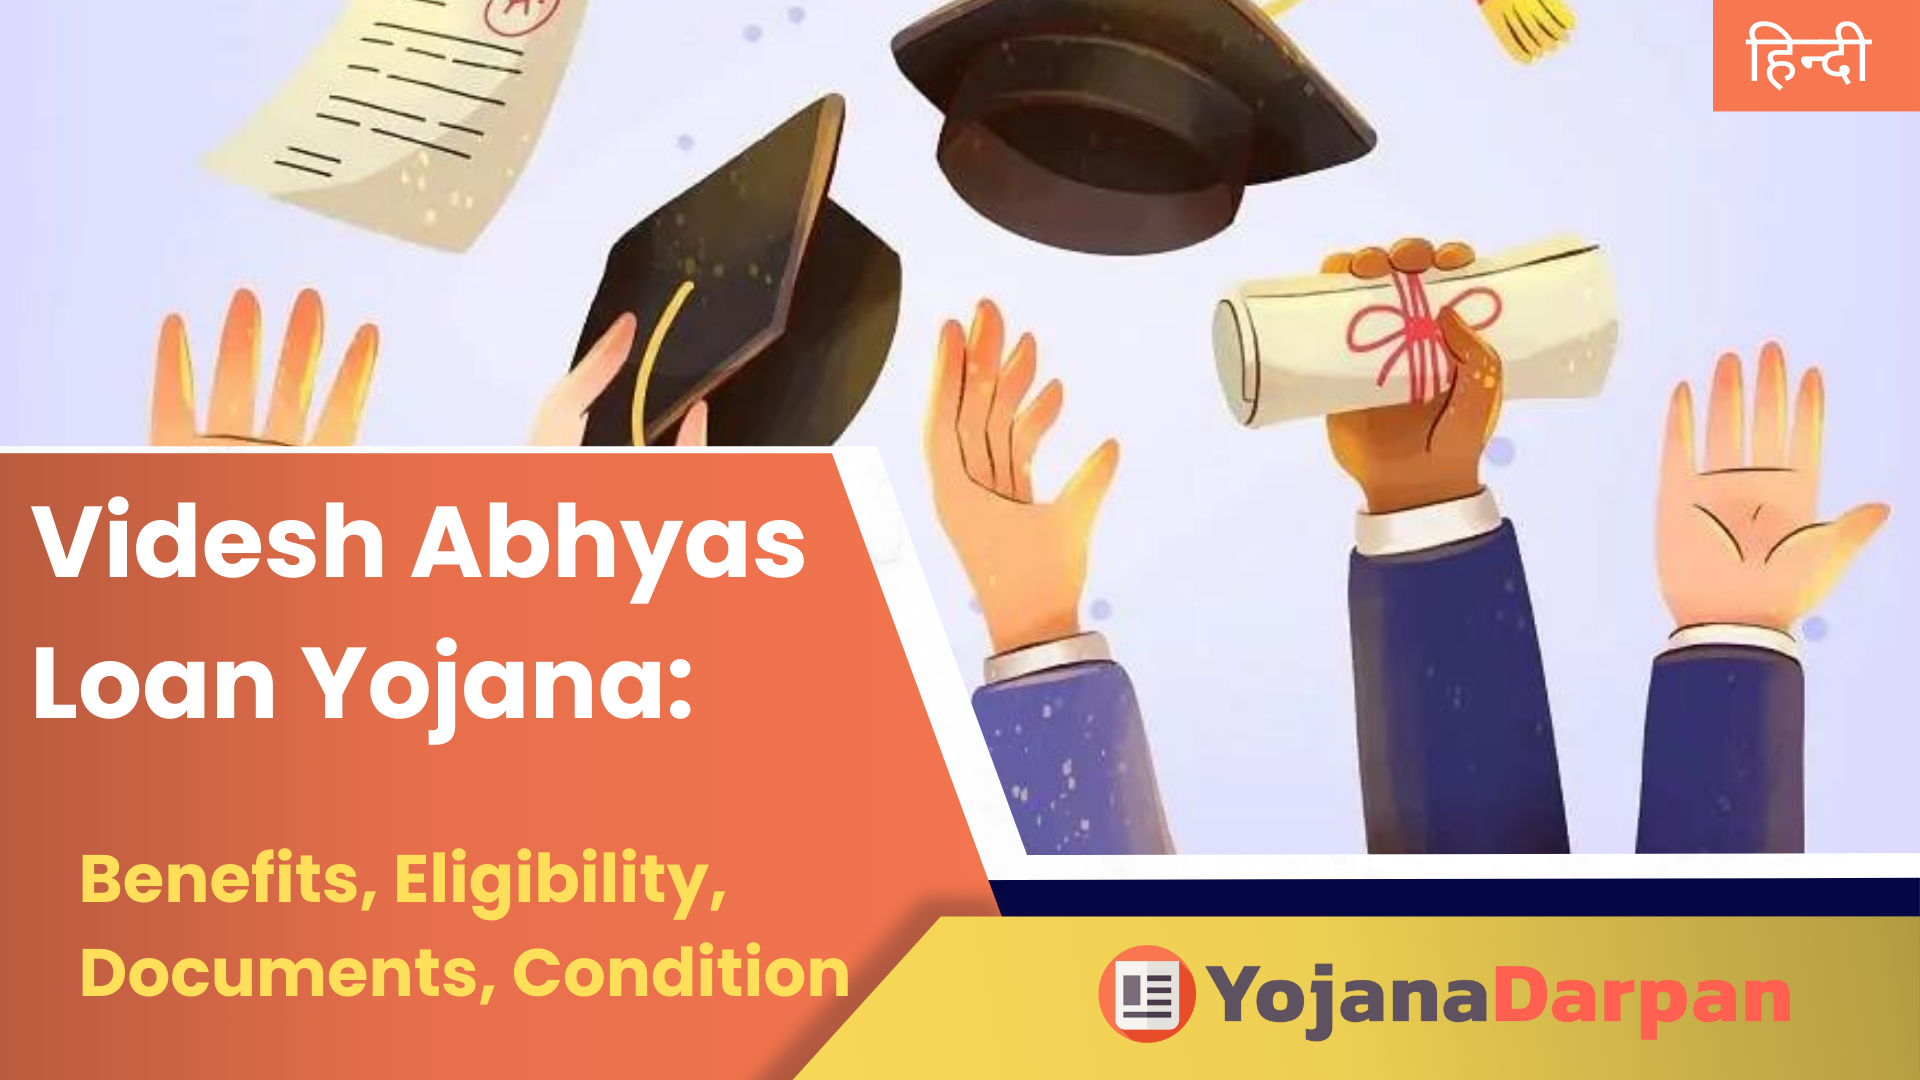 Videsh Abhyas Loan Yojana